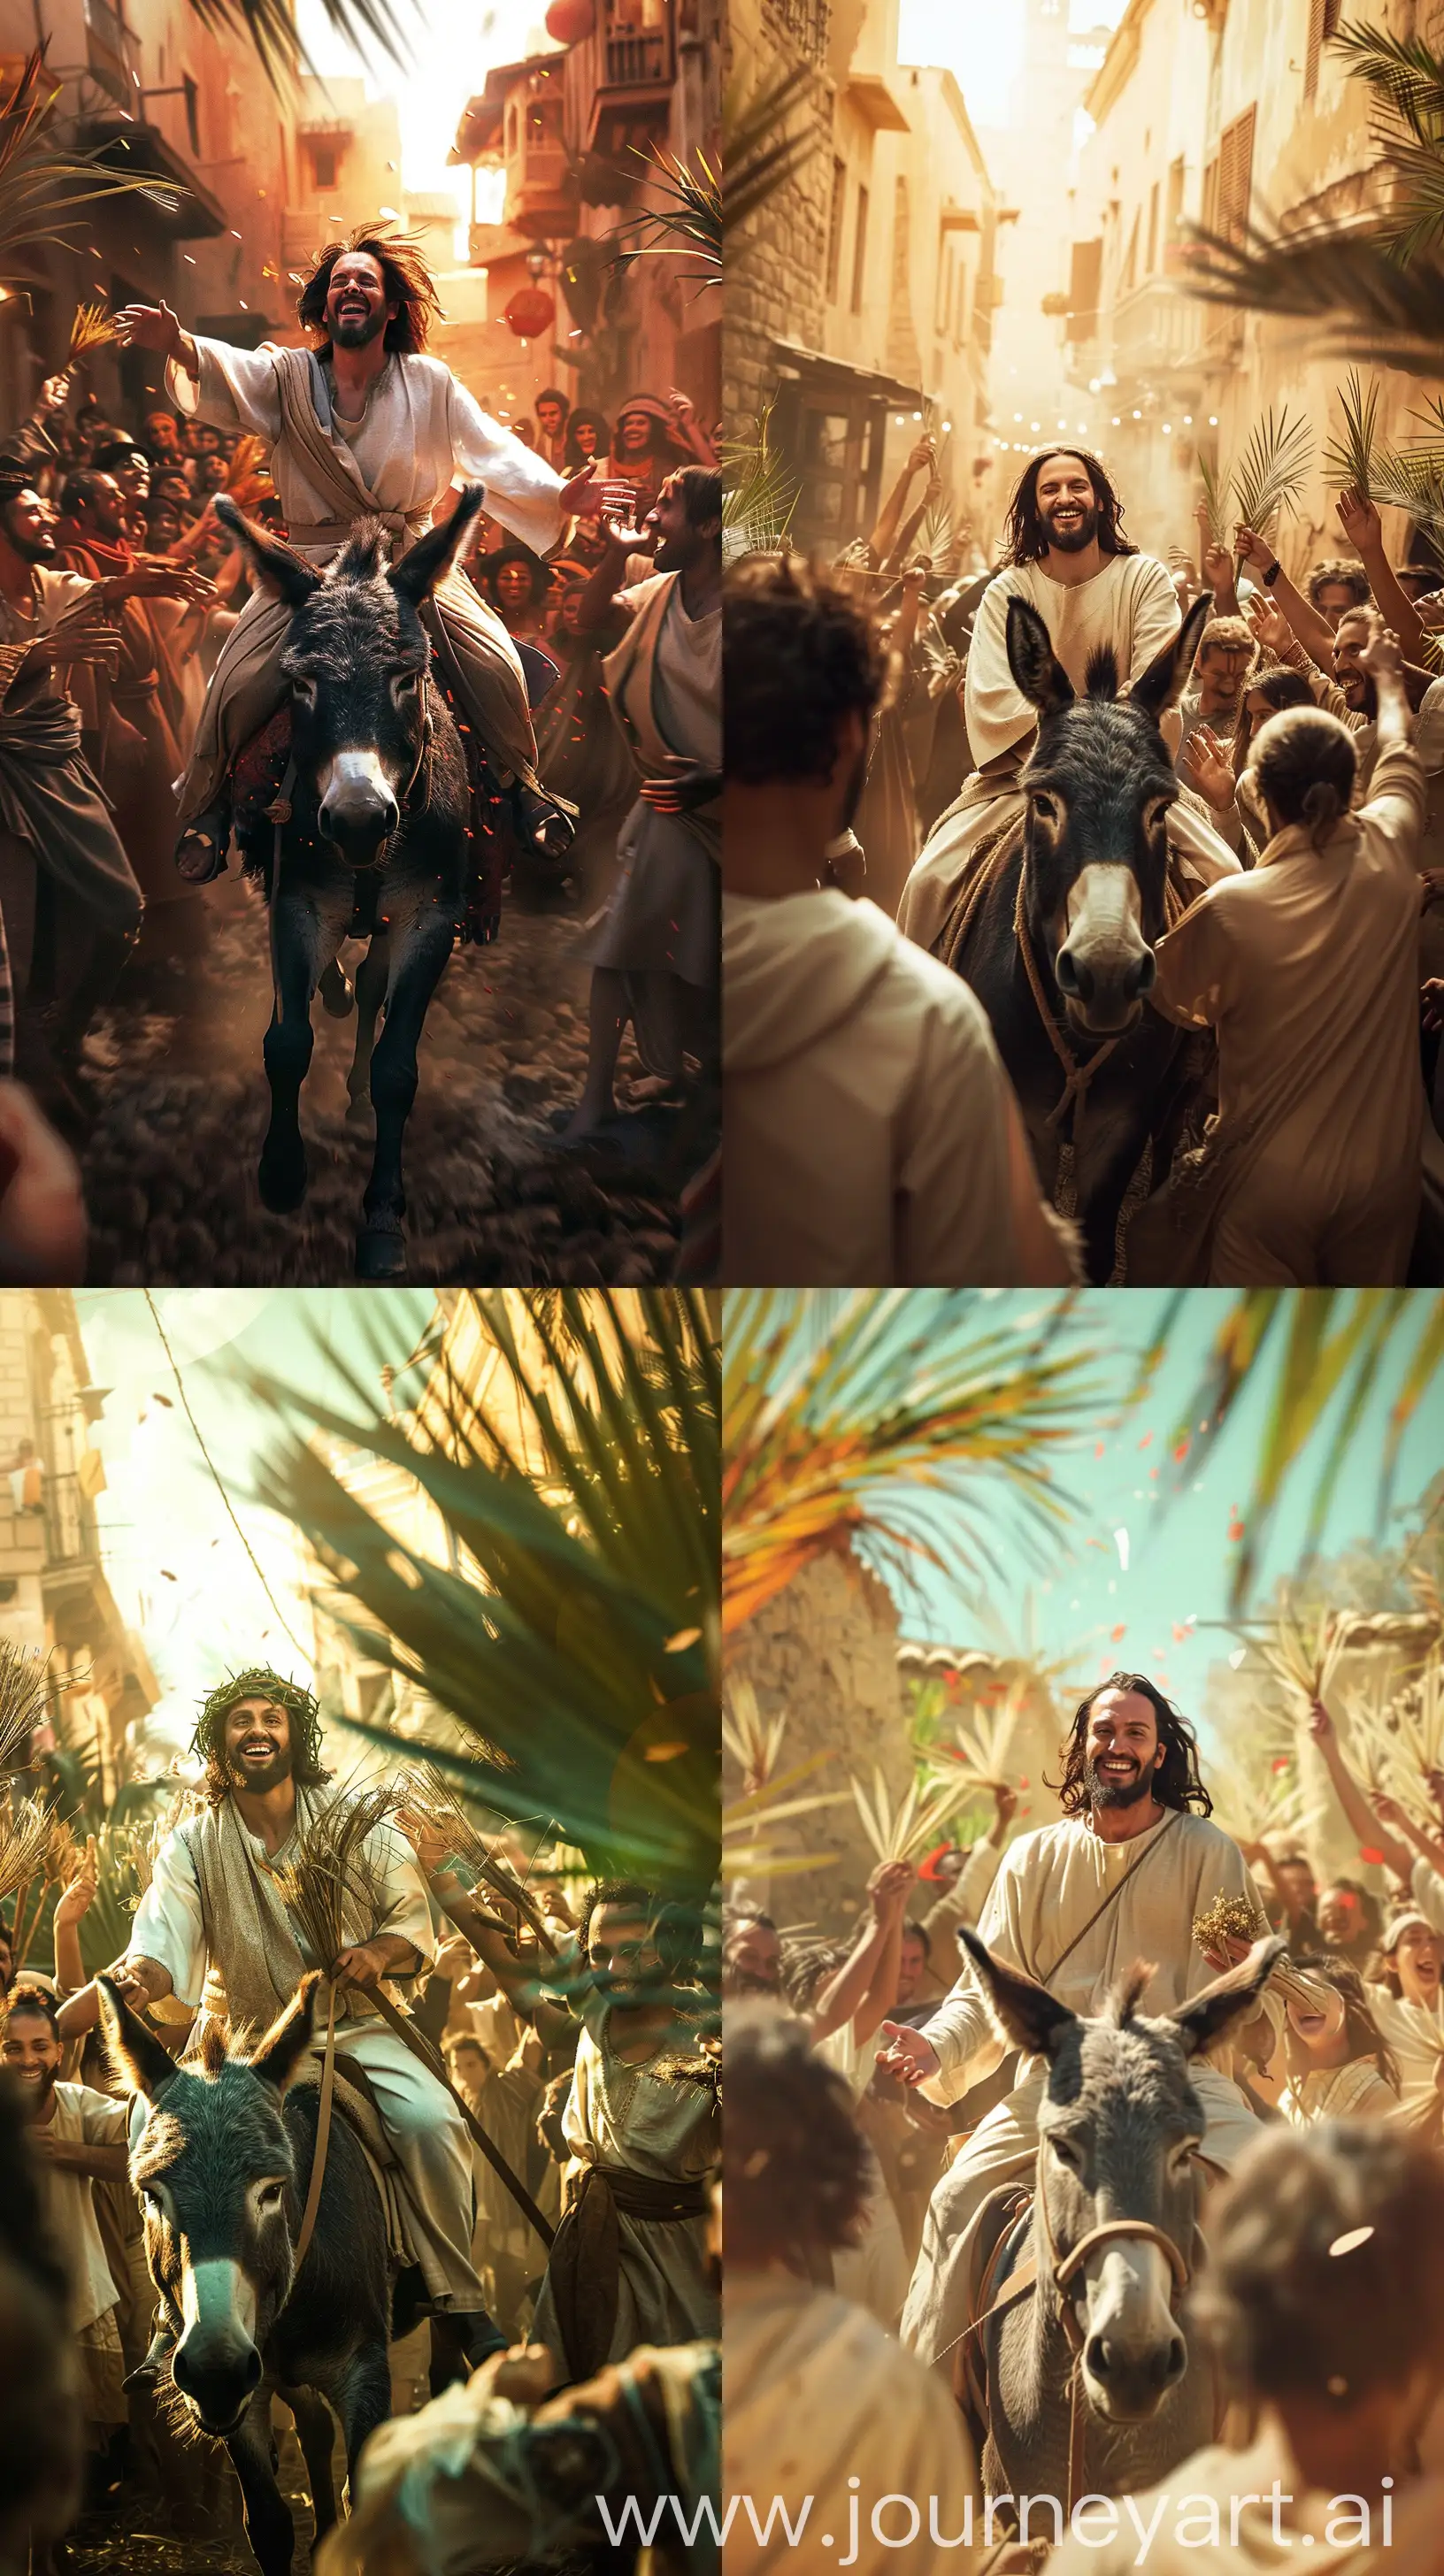 Joyful-Palm-Sunday-Jesus-Enters-Jerusalem-on-Donkey-Amidst-Celebratory-Crowd